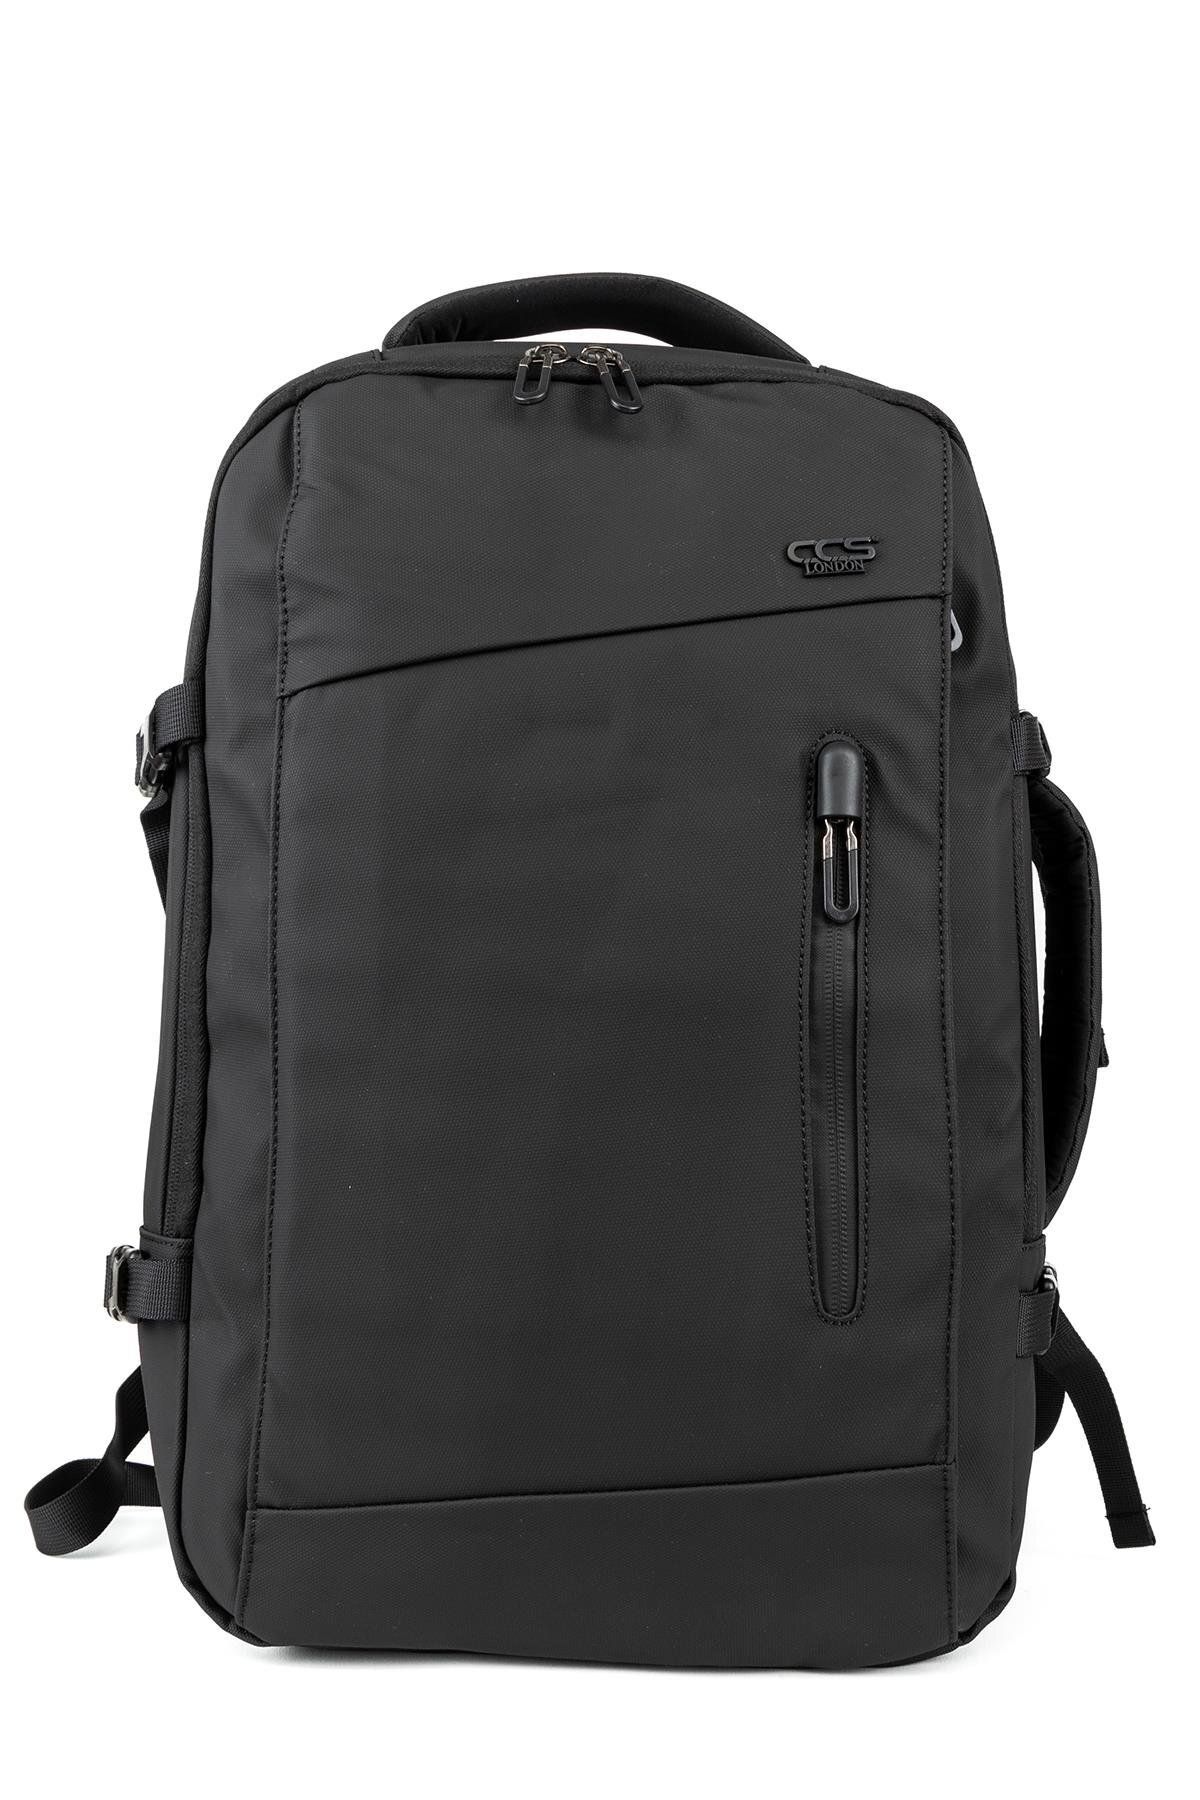 Necati Çanta 15.6 Inç Laptop Ve Kıyafet Taşıma Kolaylığı Sunan Günlük Seyahat Körüklü Sırt Çantası S